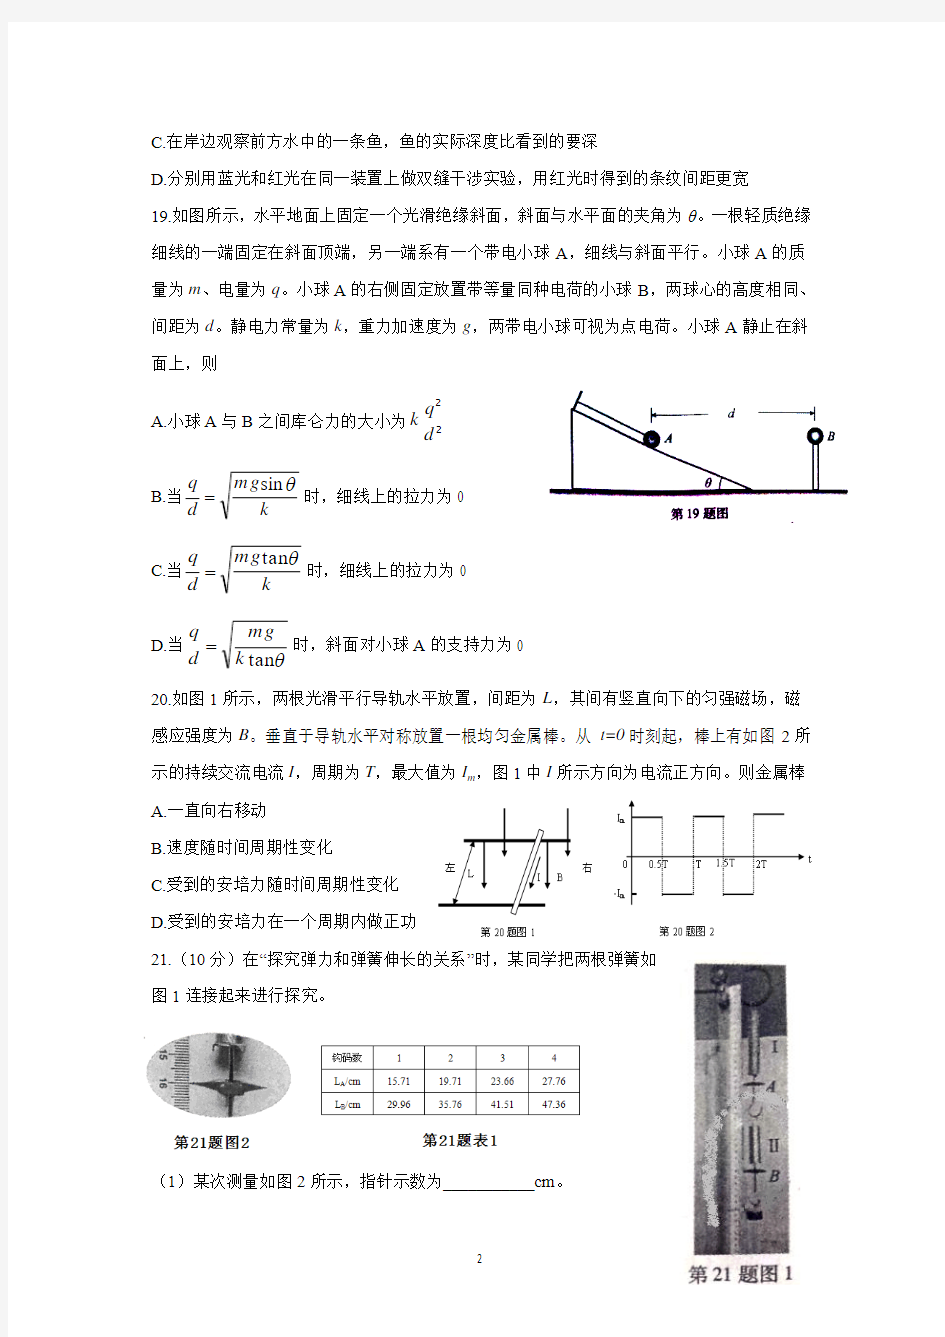 2014年浙江省高考理科综合(物理)真题试题及答案